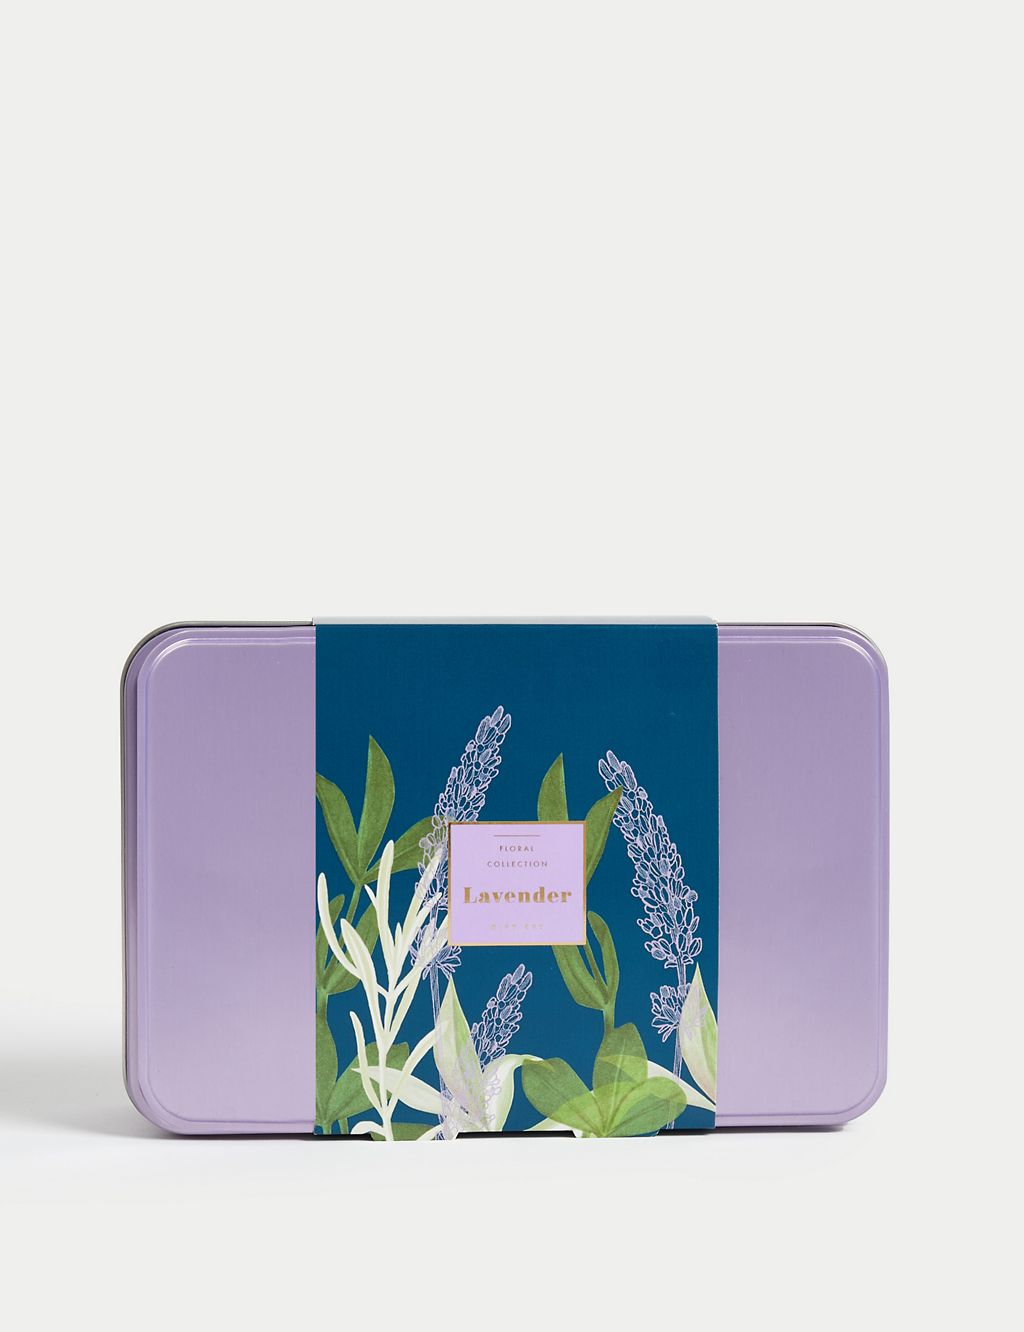 Lavender Gift Set 2 of 5